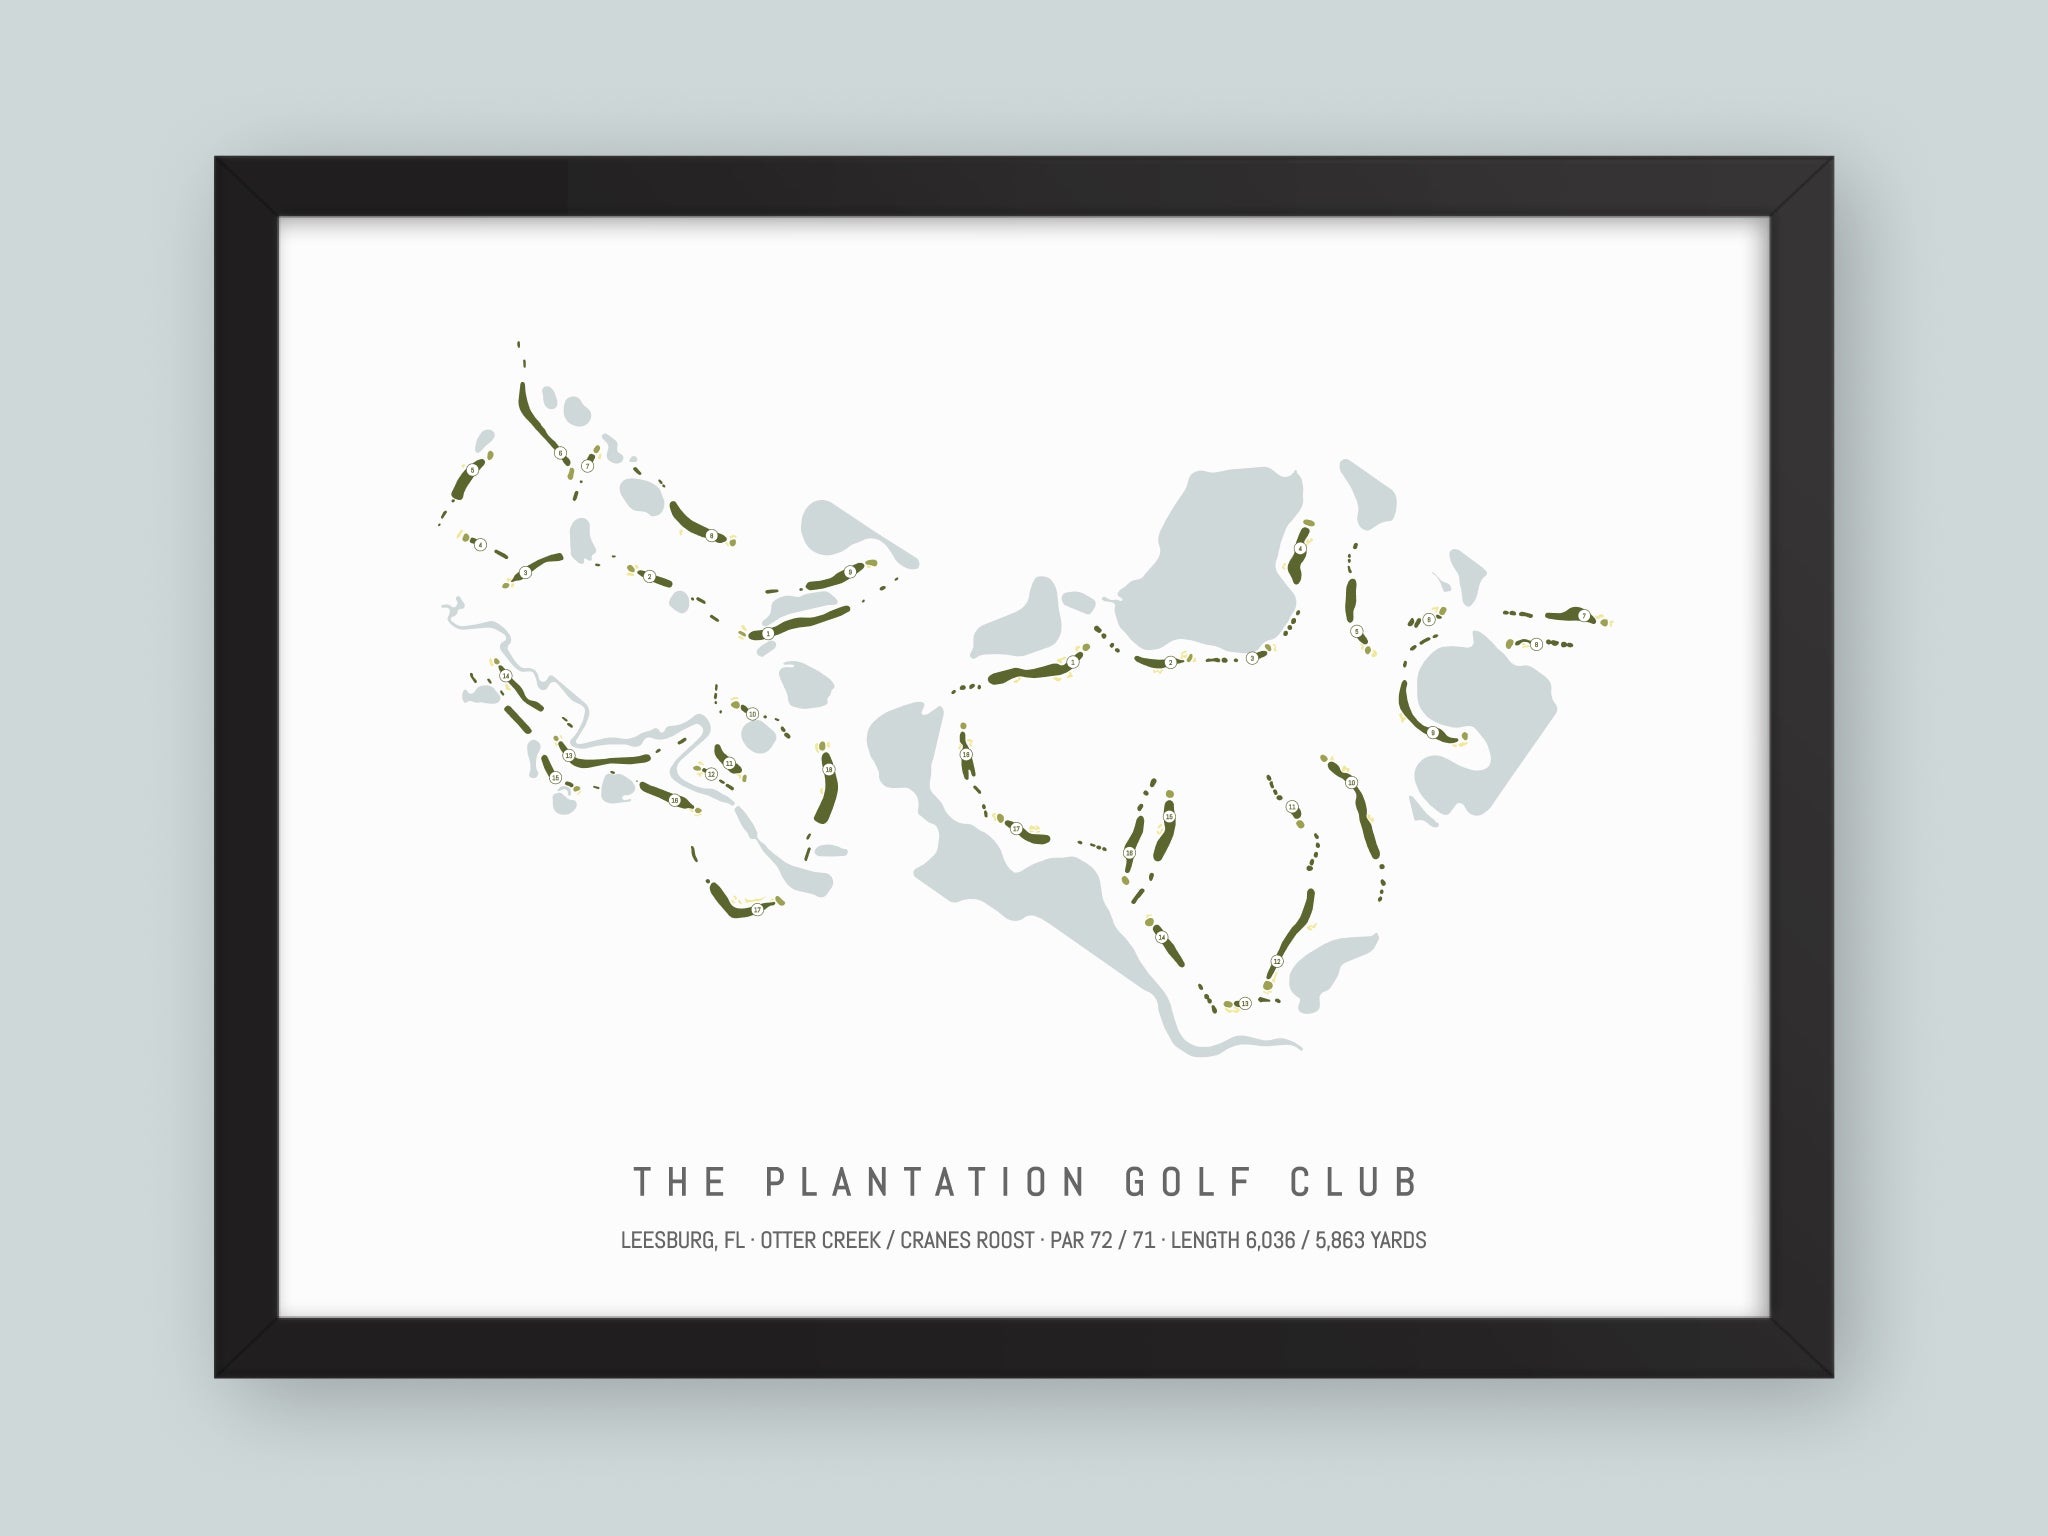 The Plantation Golf Club